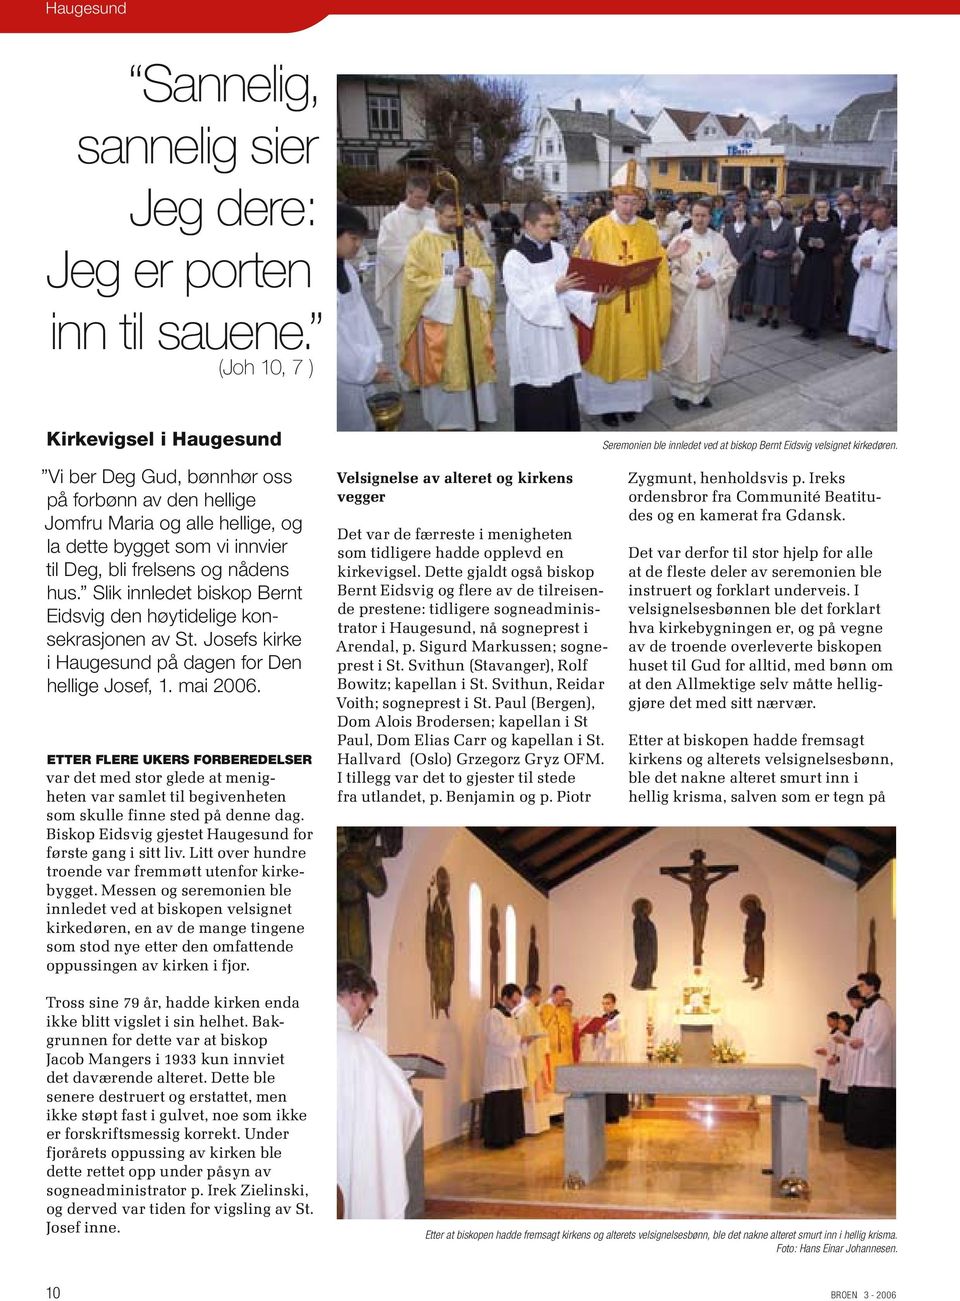 Slik innledet biskop Bernt Eidsvig den høytidelige konsekrasjonen av St. Josefs kirke i Haugesund på dagen for Den hellige Josef, 1. mai 2006.